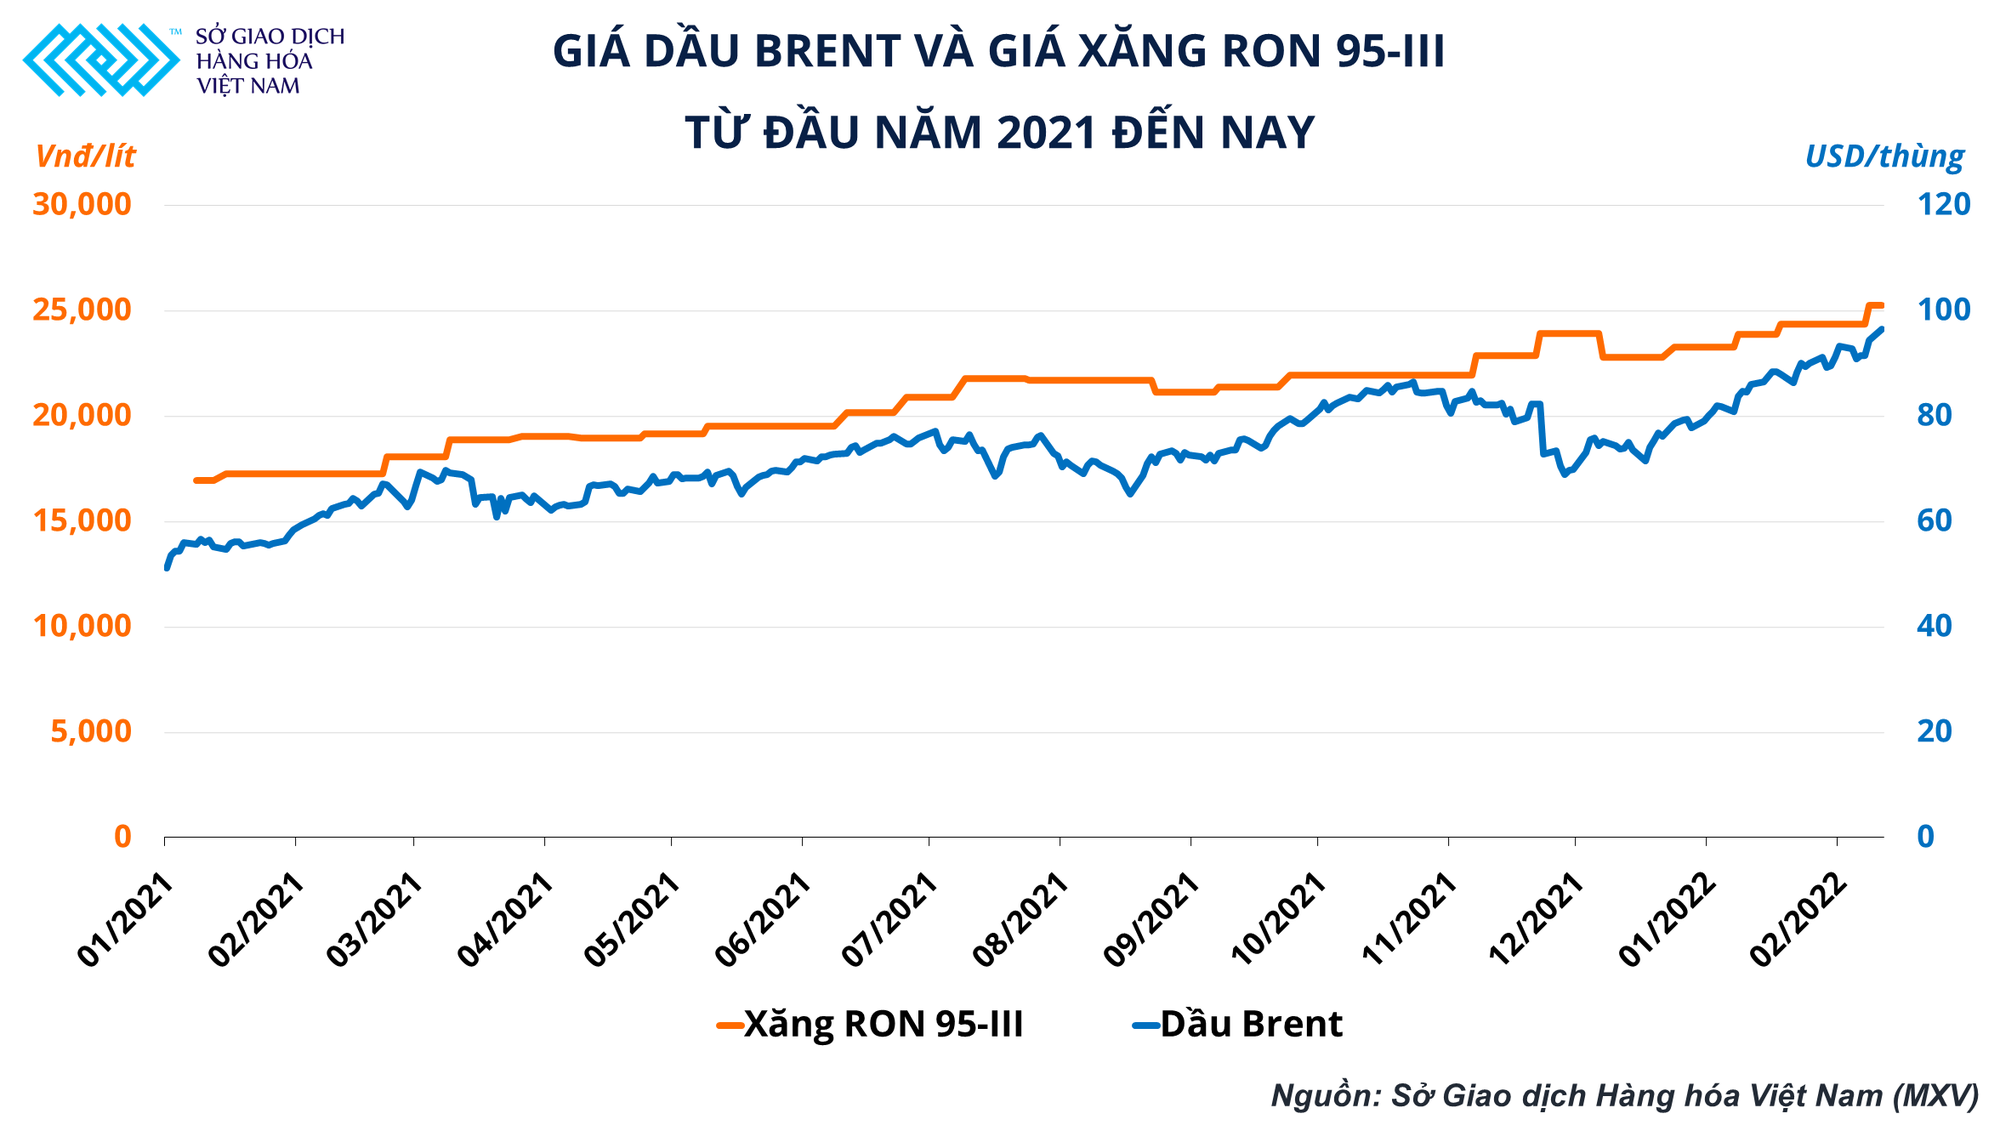 Giải pháp hiệu quả trong thời điểm giá dầu leo thang nhưng phần lớn doanh nghiệp kinh doanh xăng dầu tại Việt Nam đang bỏ qua - Ảnh 1.